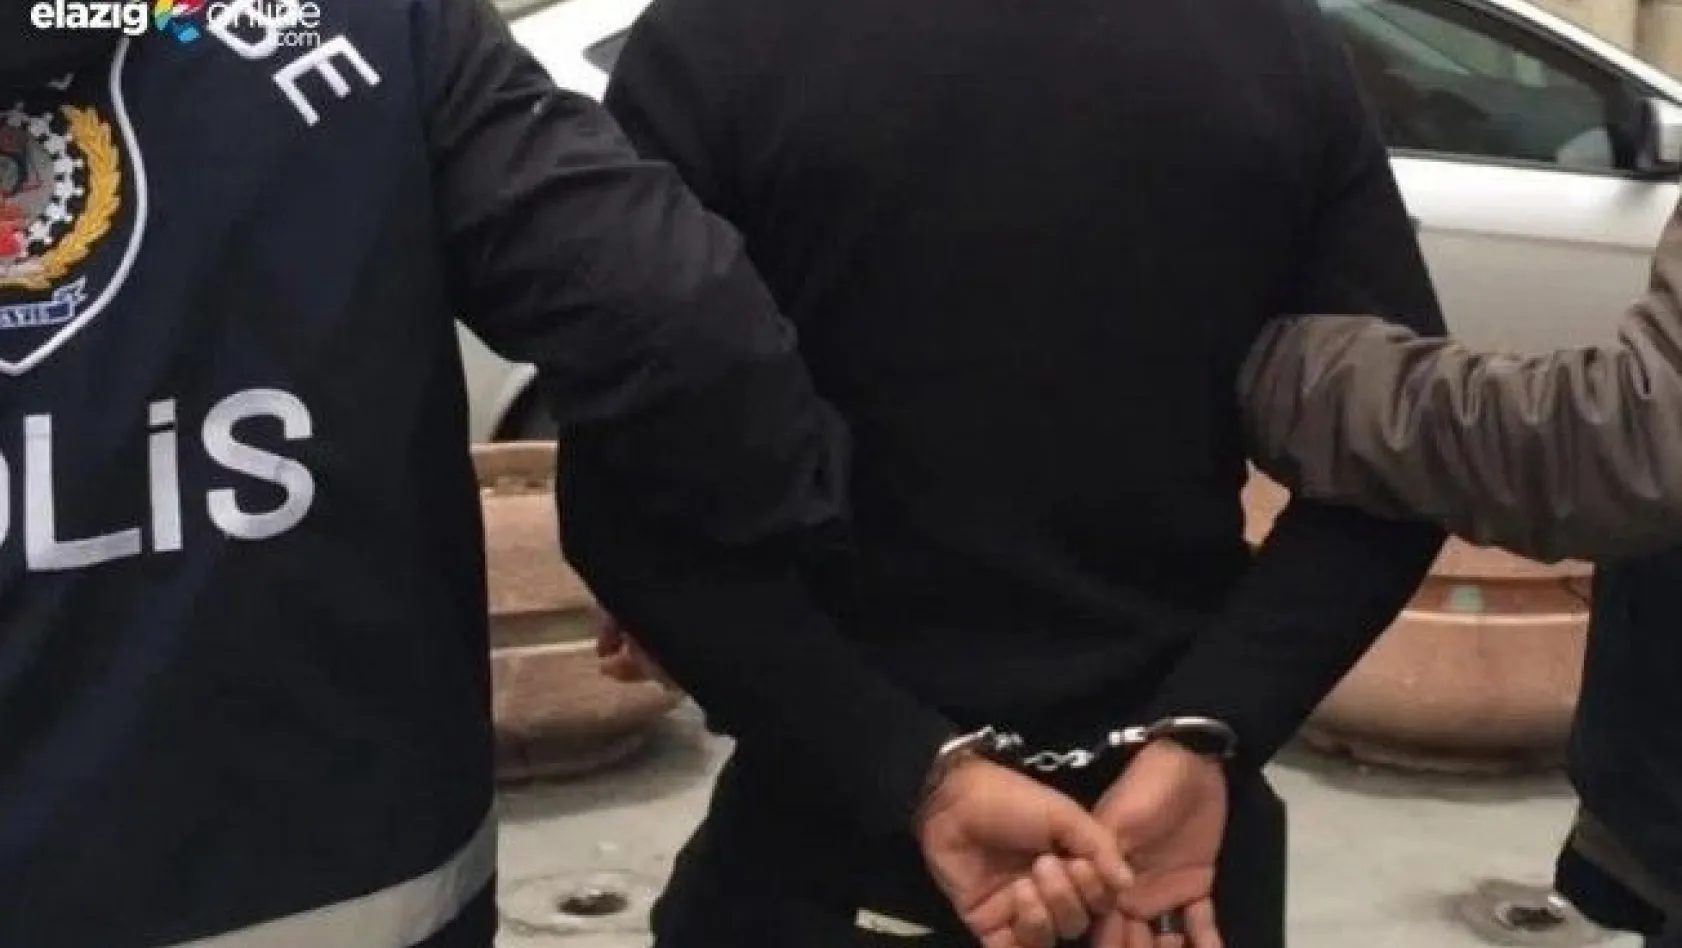 Elazığ'da Uyuşturucu Taciri 4 Kişi Tutuklandı